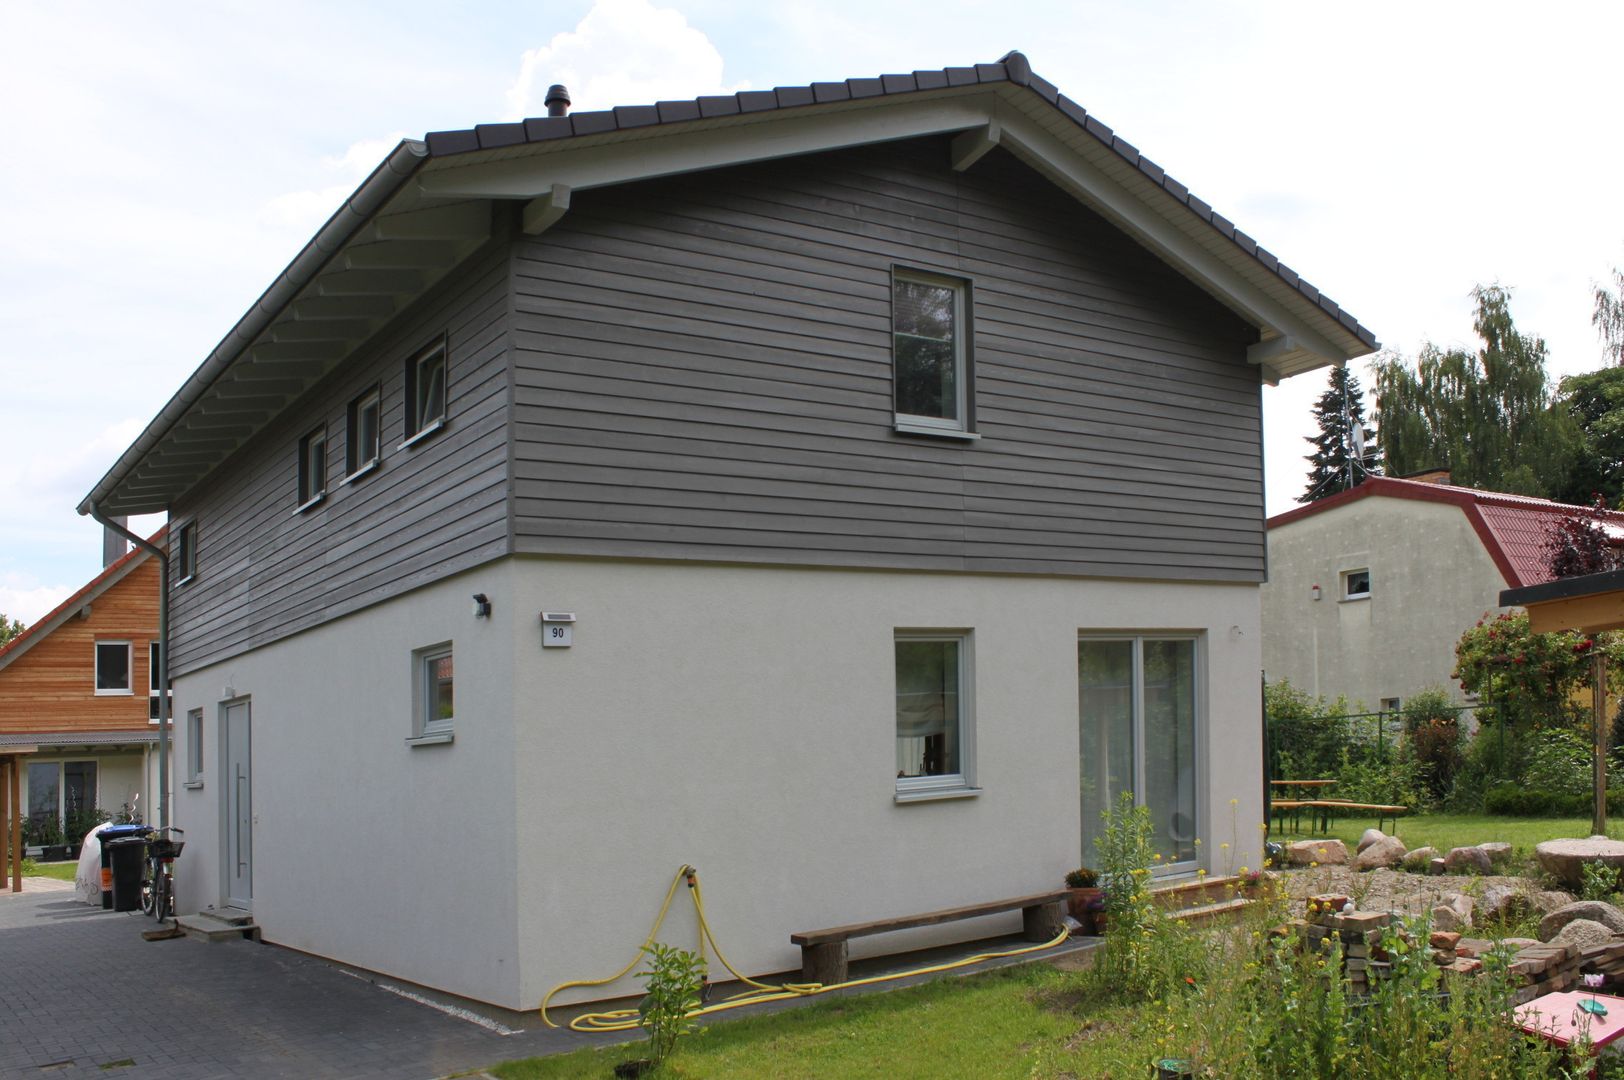 Wohngesundes Holzhaus - modern und kostengünstig, Neues Gesundes Bauen Neues Gesundes Bauen Modern houses